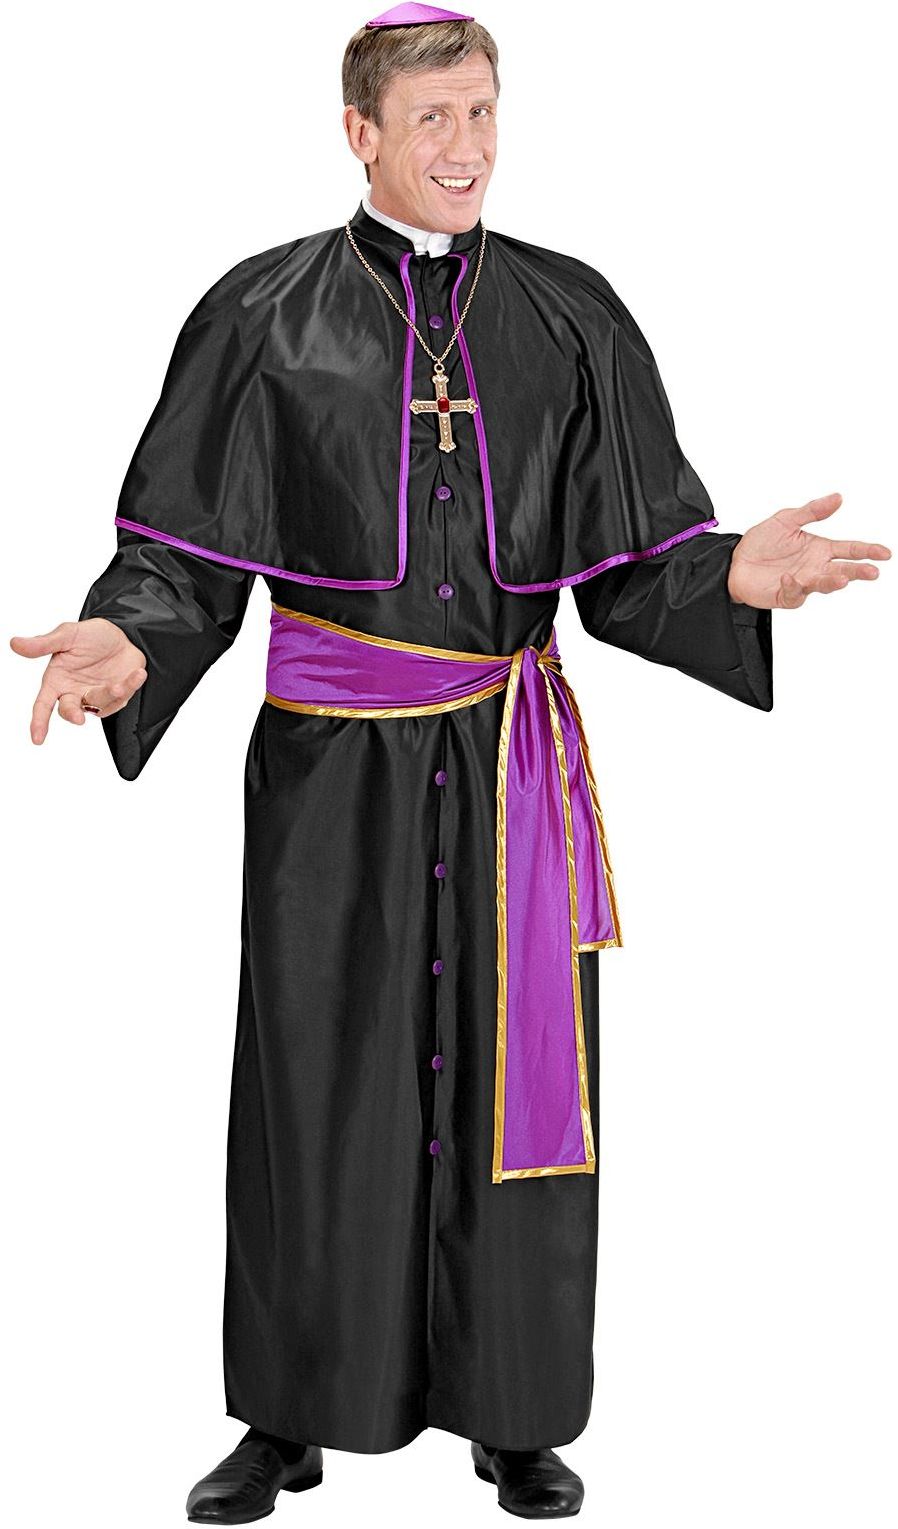 Kardinaal kostuum